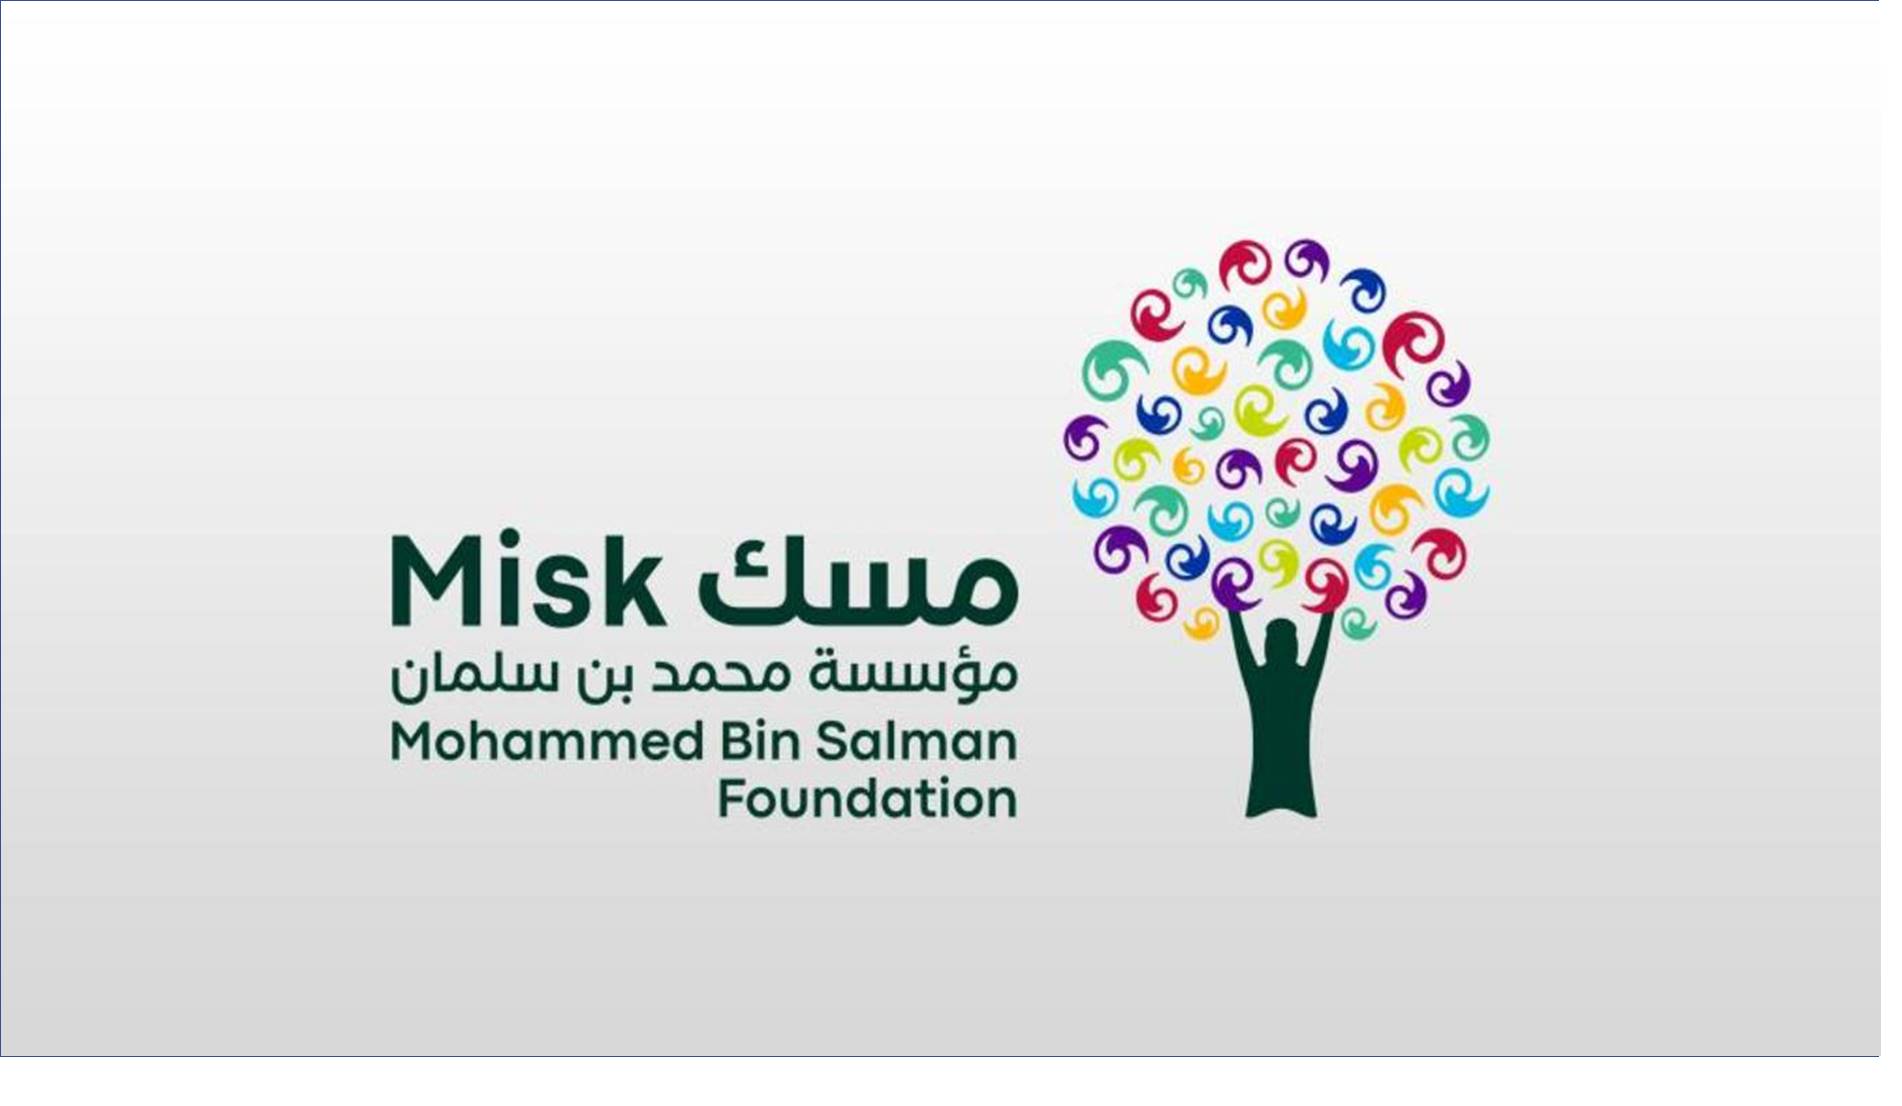 الان 7 دورات مجانية عن بعد في مؤسسة مسك الخيرية بالسعودية